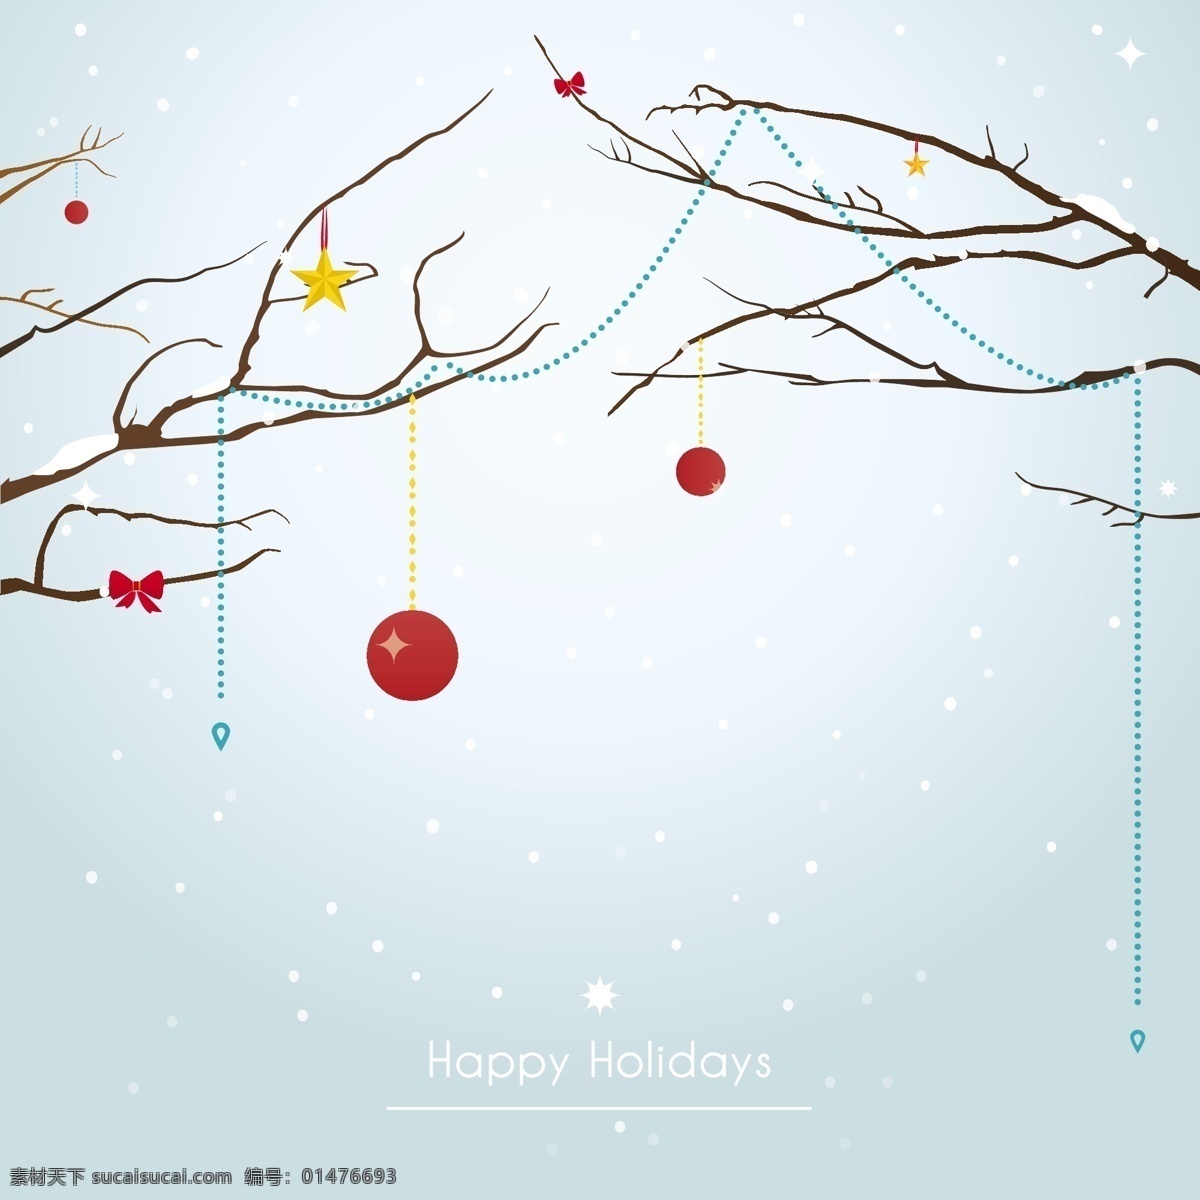 冬季 圣诞节 贺卡 背景 矢量 蝴蝶结 枯树 圣诞节装饰 雪花飘 冷峻的树枝 小彩球 矢量图 其他矢量图